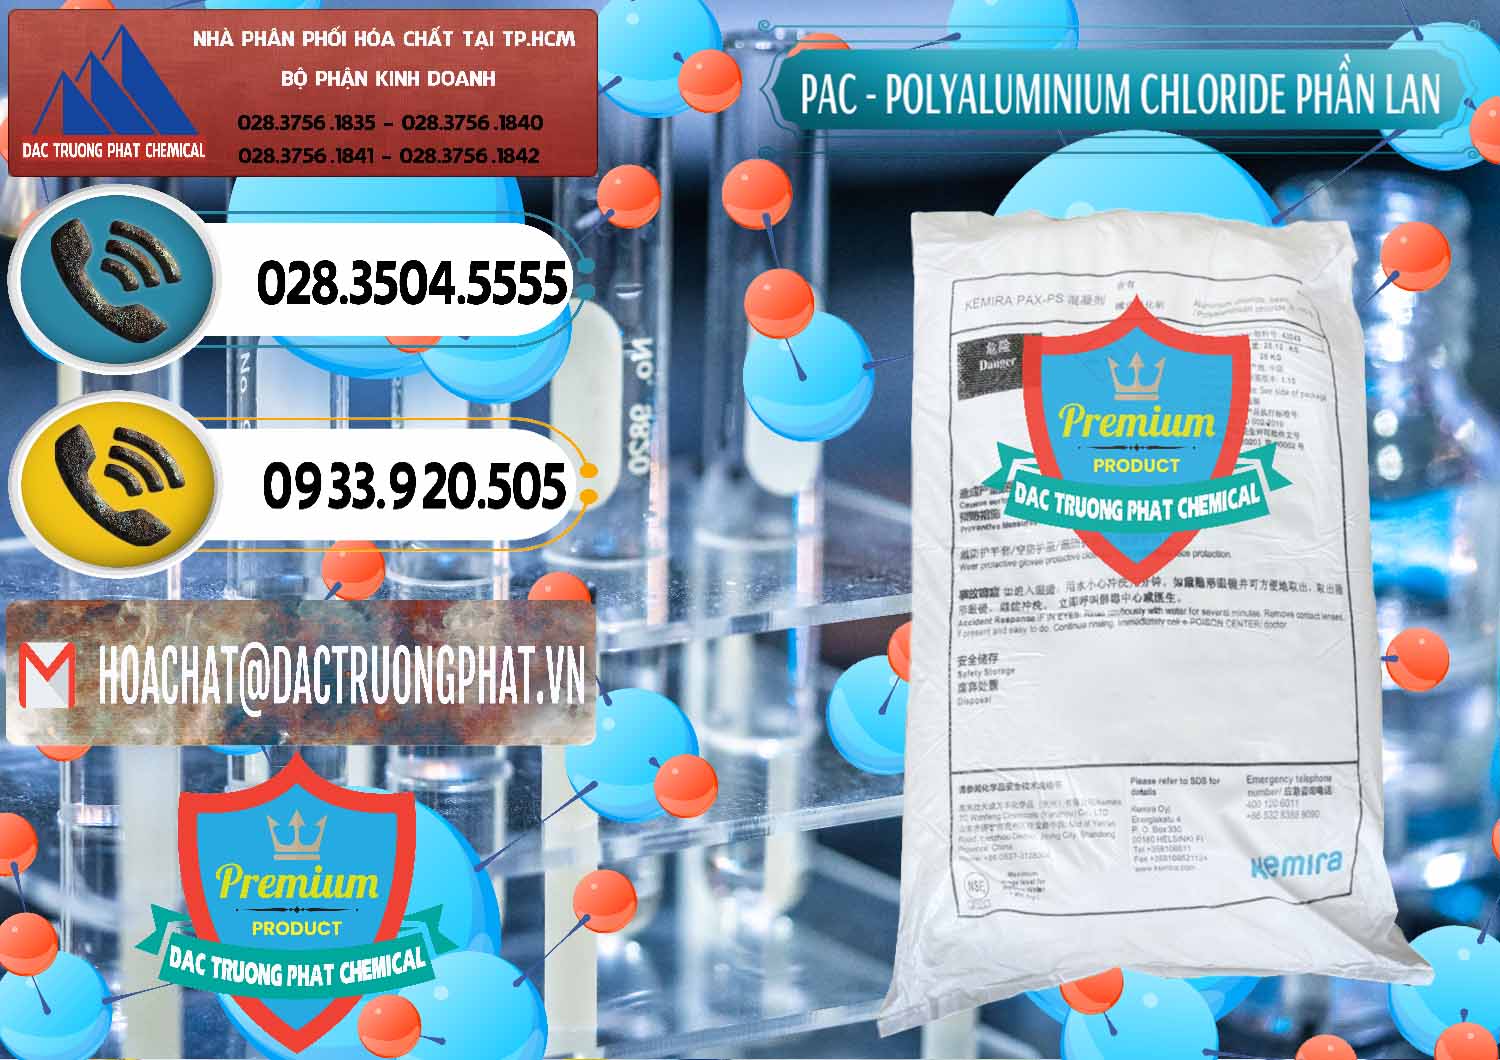 Công ty kinh doanh _ bán PAC - Polyaluminium Chloride Phần Lan Finland - 0383 - Cty chuyên bán & phân phối hóa chất tại TP.HCM - hoachatdetnhuom.vn